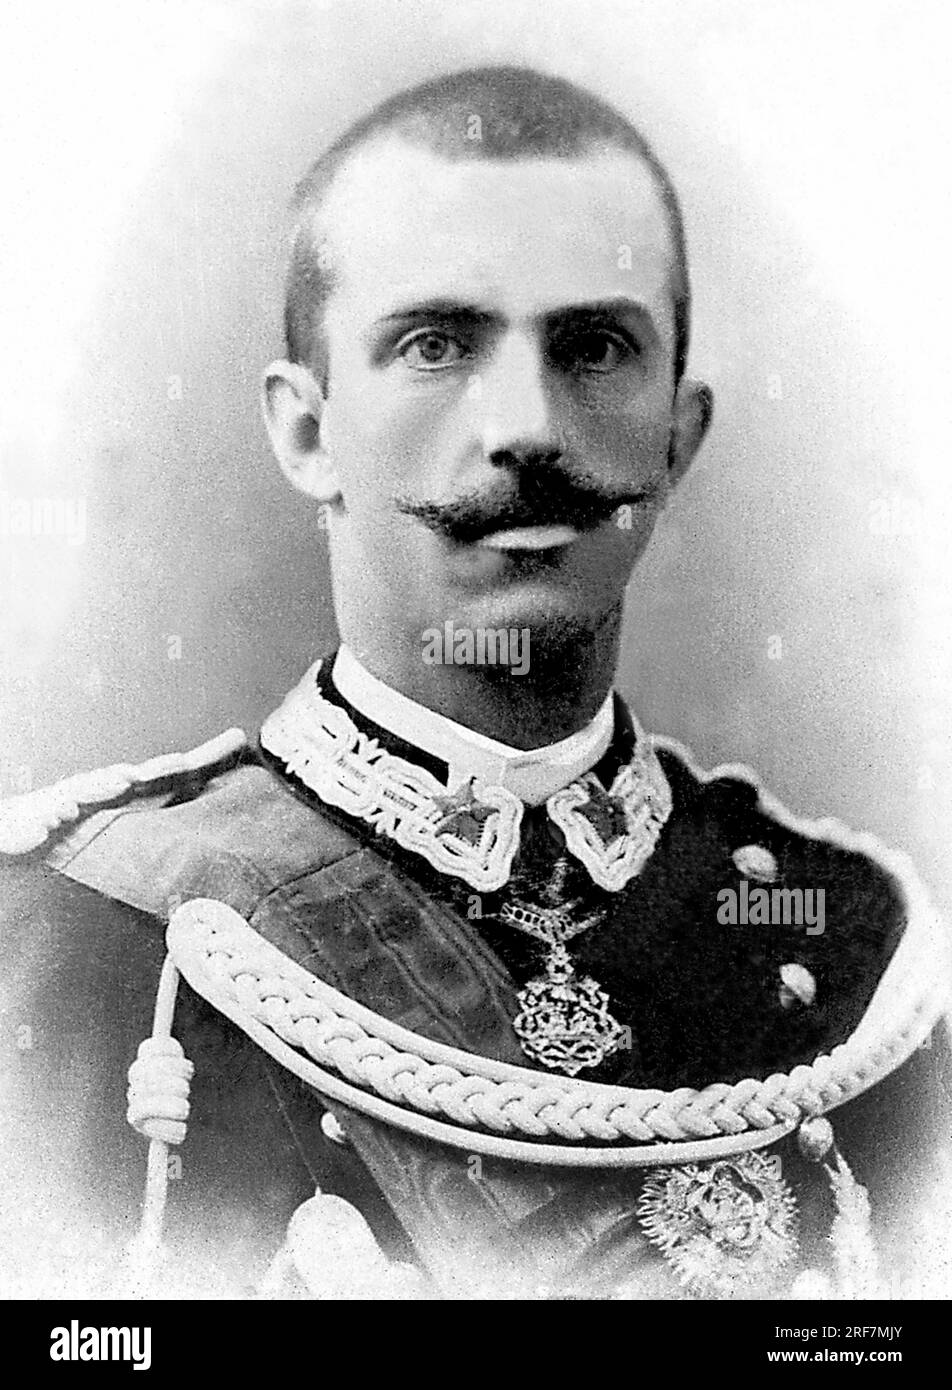 Portrait de Victor Emmanuel III d'Italie (Victor-Emmanuel) (Vittorio Emanuele) (1869-1947), roi d'Italie de 1900 jusqu'a son abdication en 1946. Stockfoto